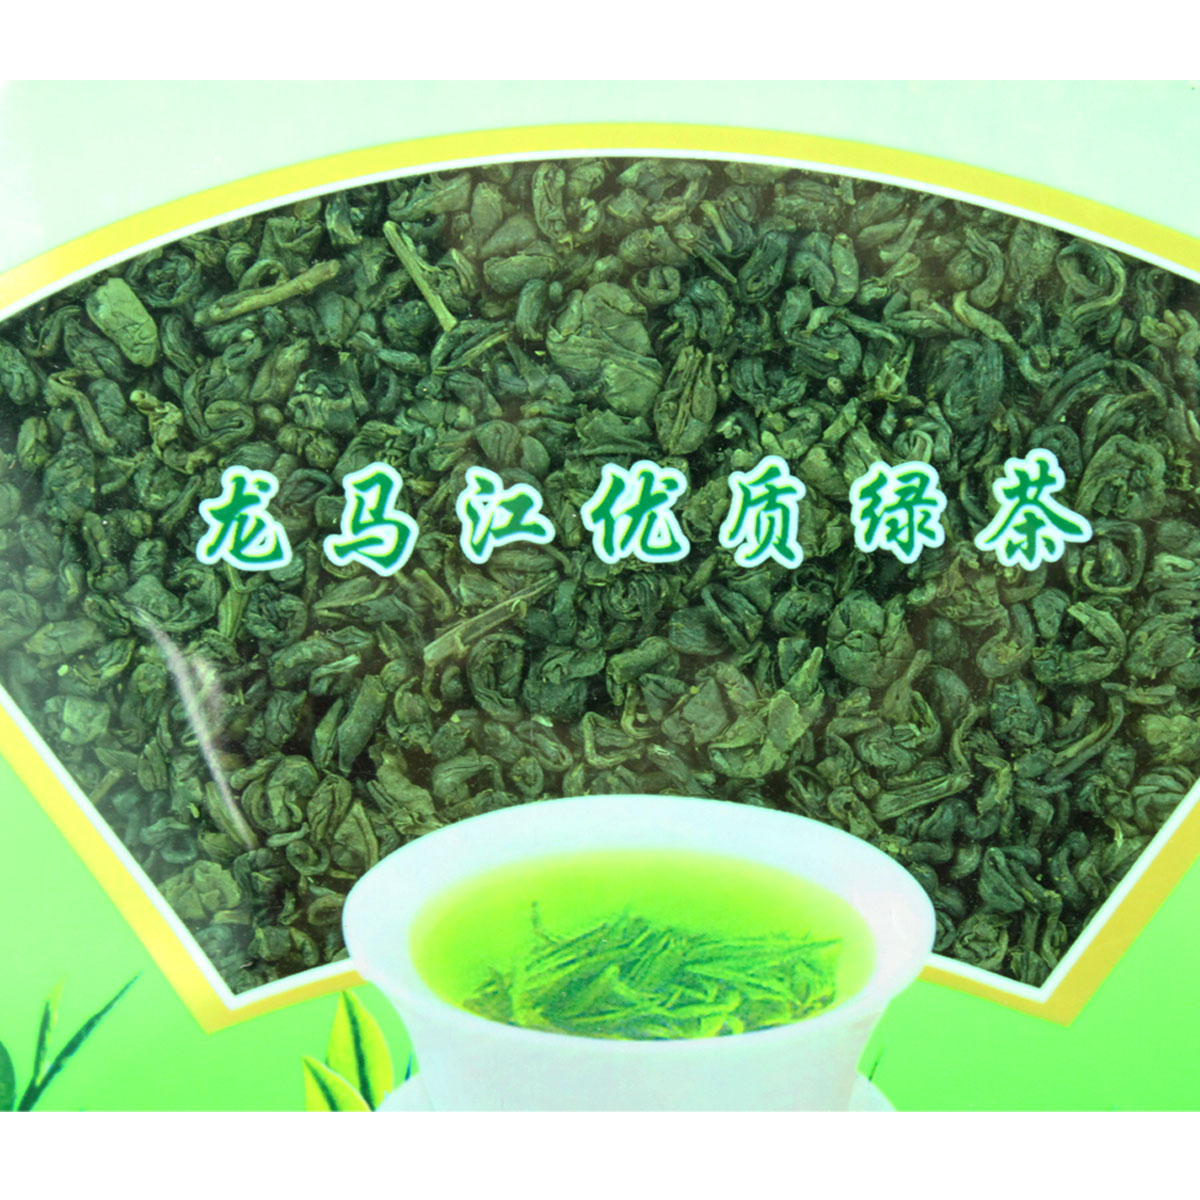 安益普洱一级碧螺春380克 云南特产绿茶普洱茶大叶种茶